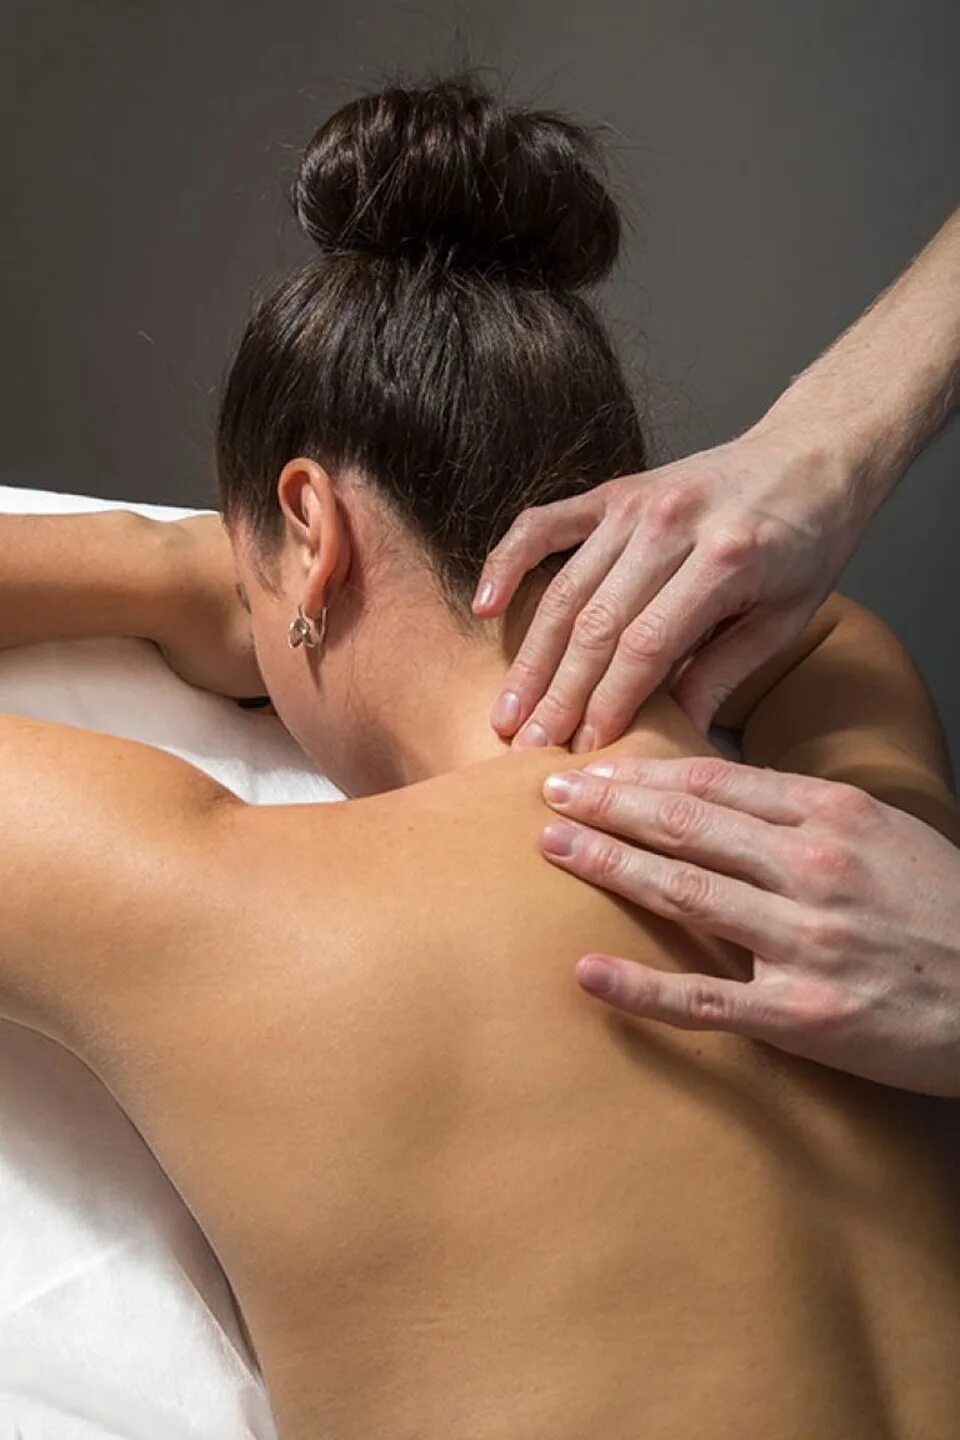 Massage o. Классический массаж ШВЗ. Массаж шейно-воротниковой зоны. Массаж спины. Массаж спины и воротниковой зоны.